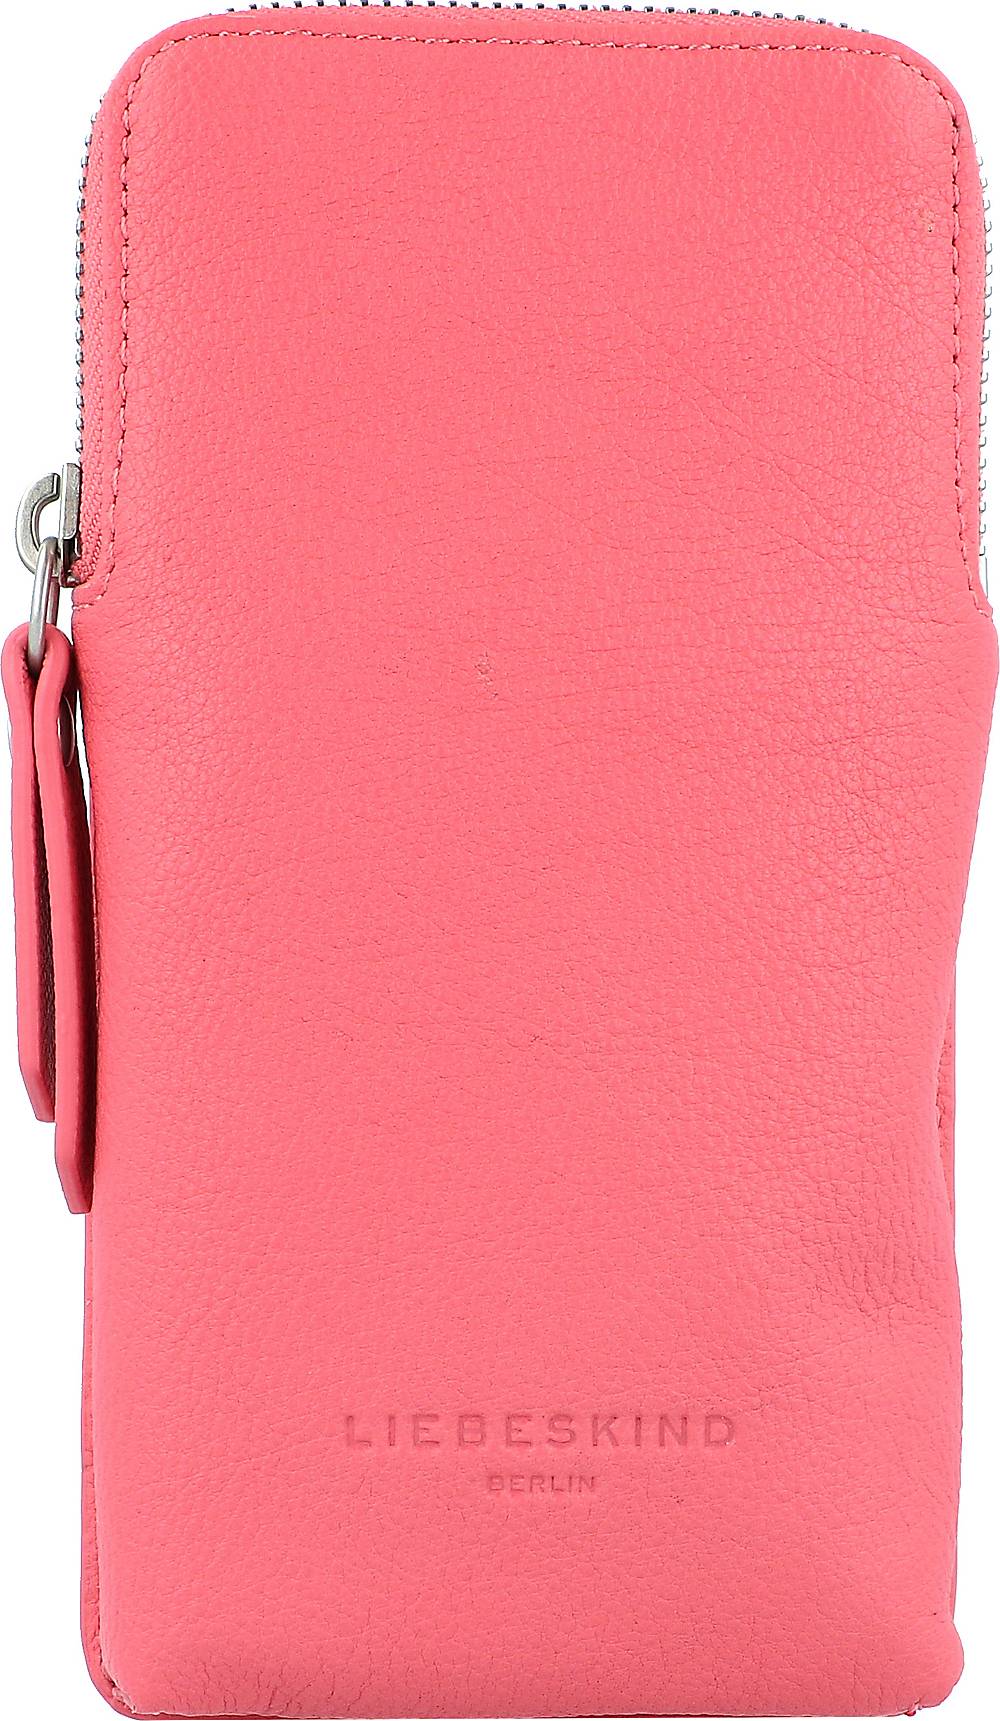 Liebeskind, Basic Sling Handytasche Leder 9 Cm in pink, Handyhüllen & Zubehör für Damen